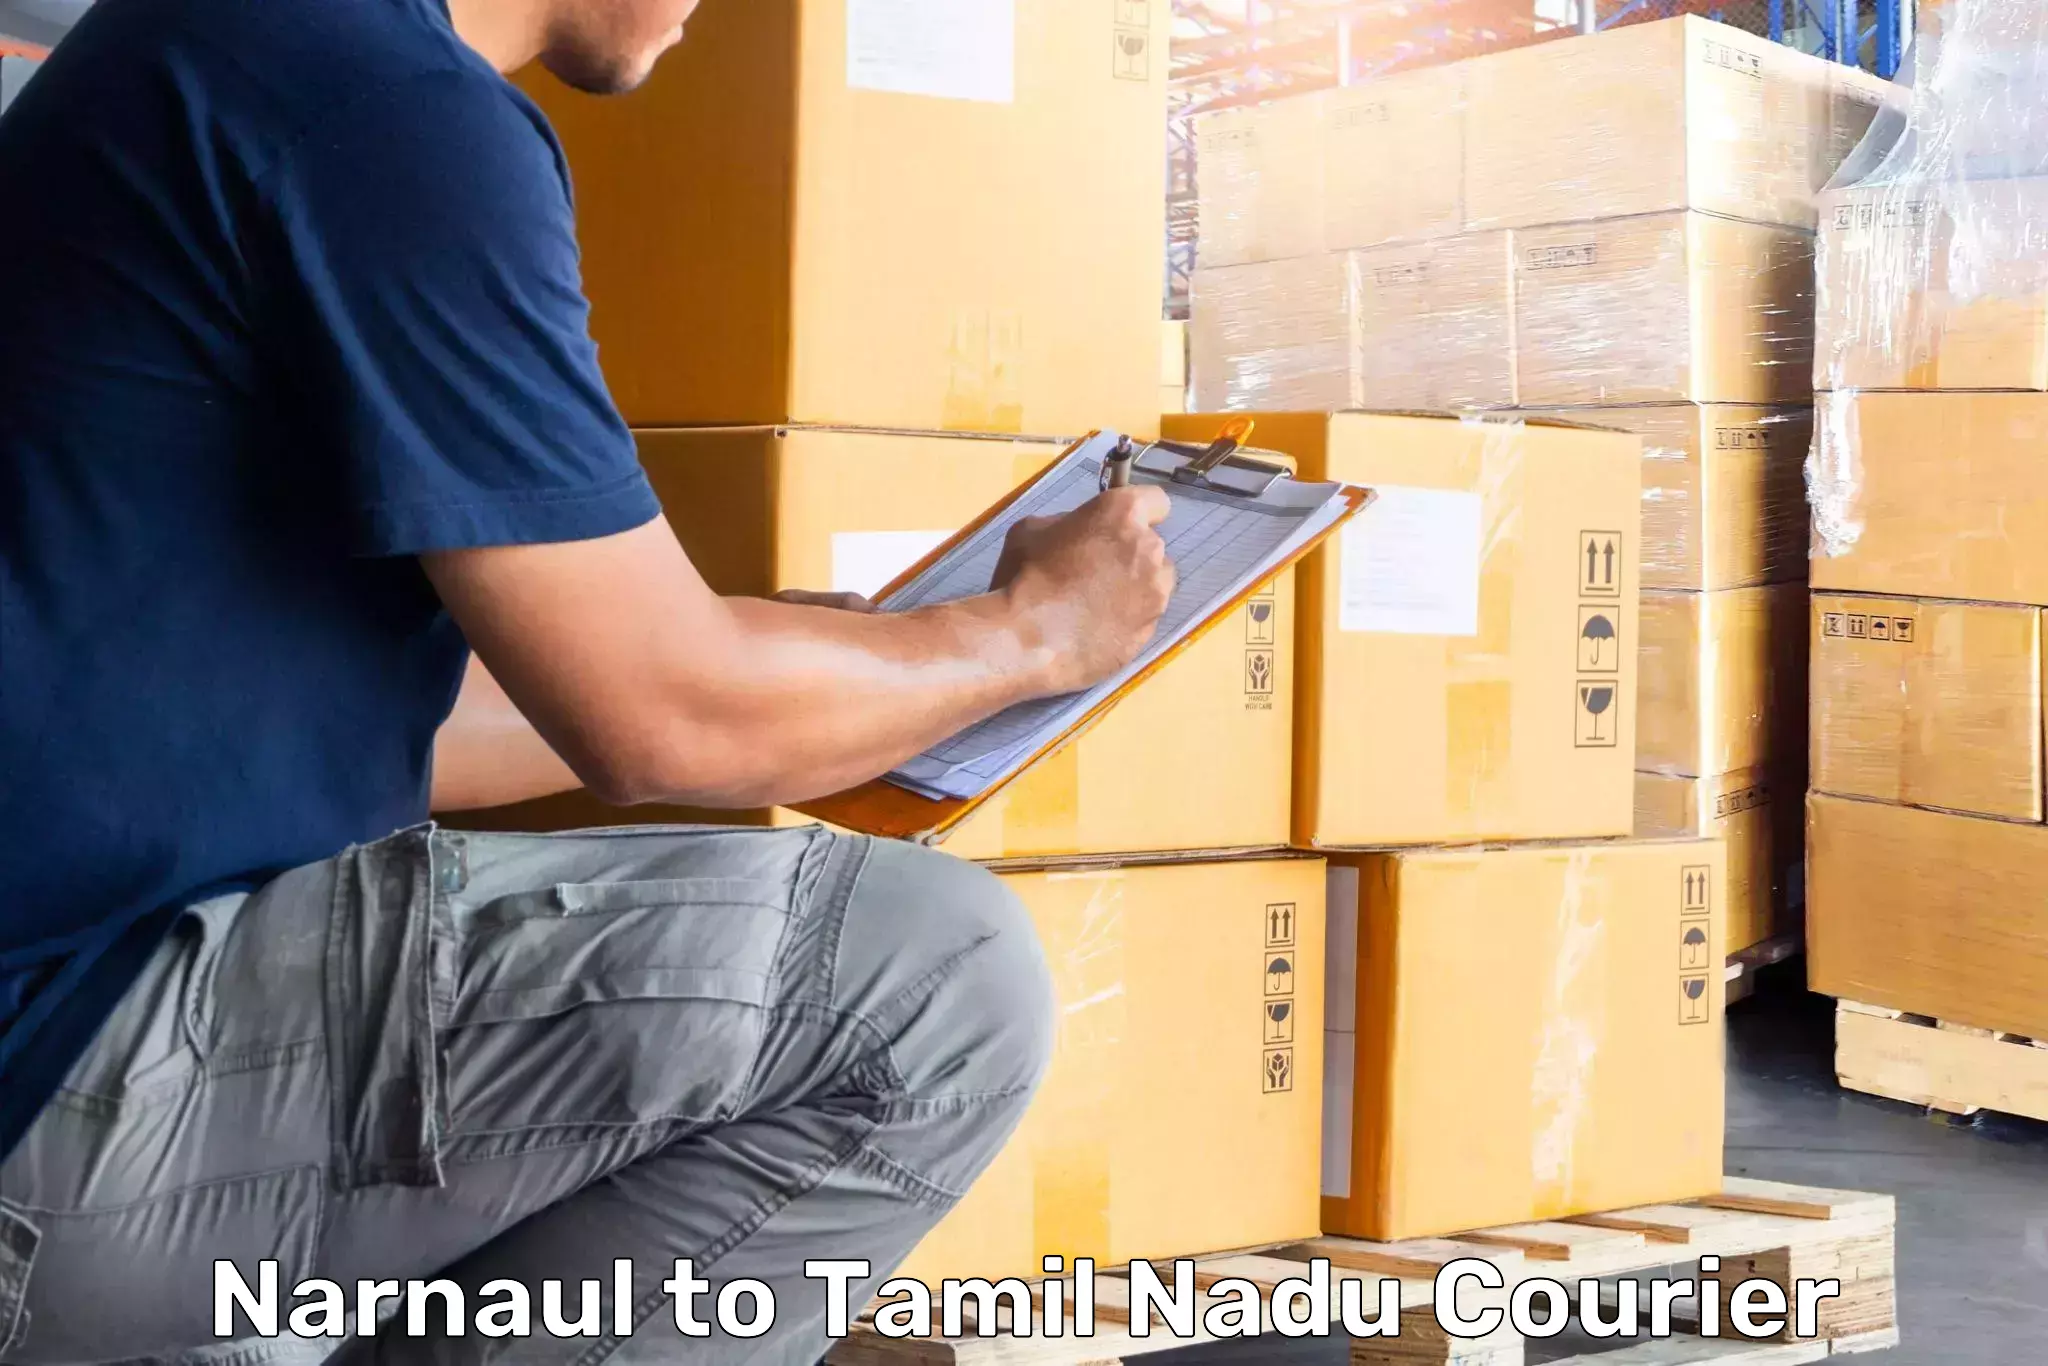 Luggage shipment tracking Narnaul to Amrita Vishwa Vidyapeetham Coimbatore